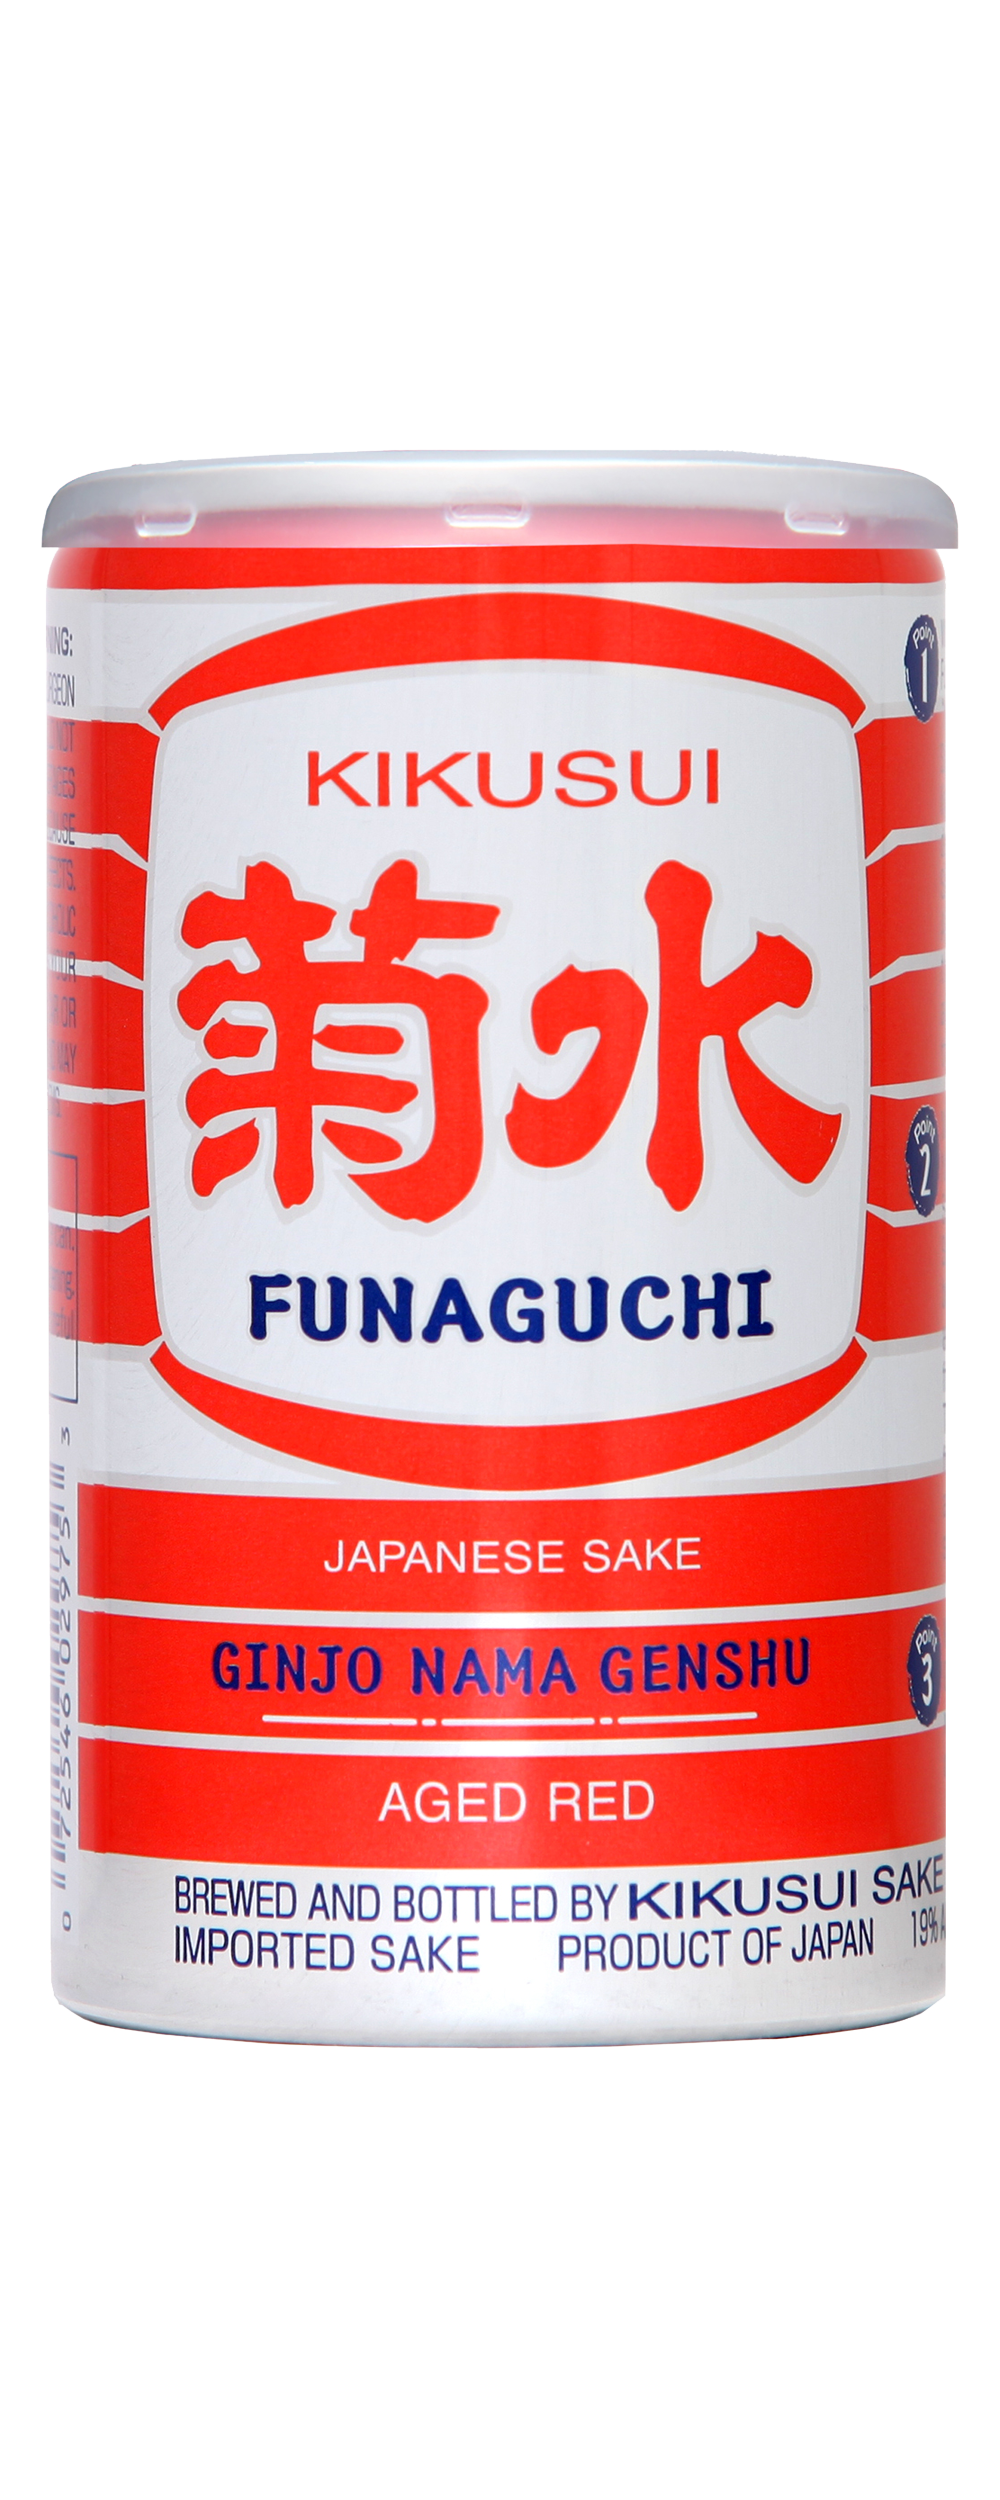 Kikusui Funaguchi Junmai Ginjo Nama Genshu Aged "Red"